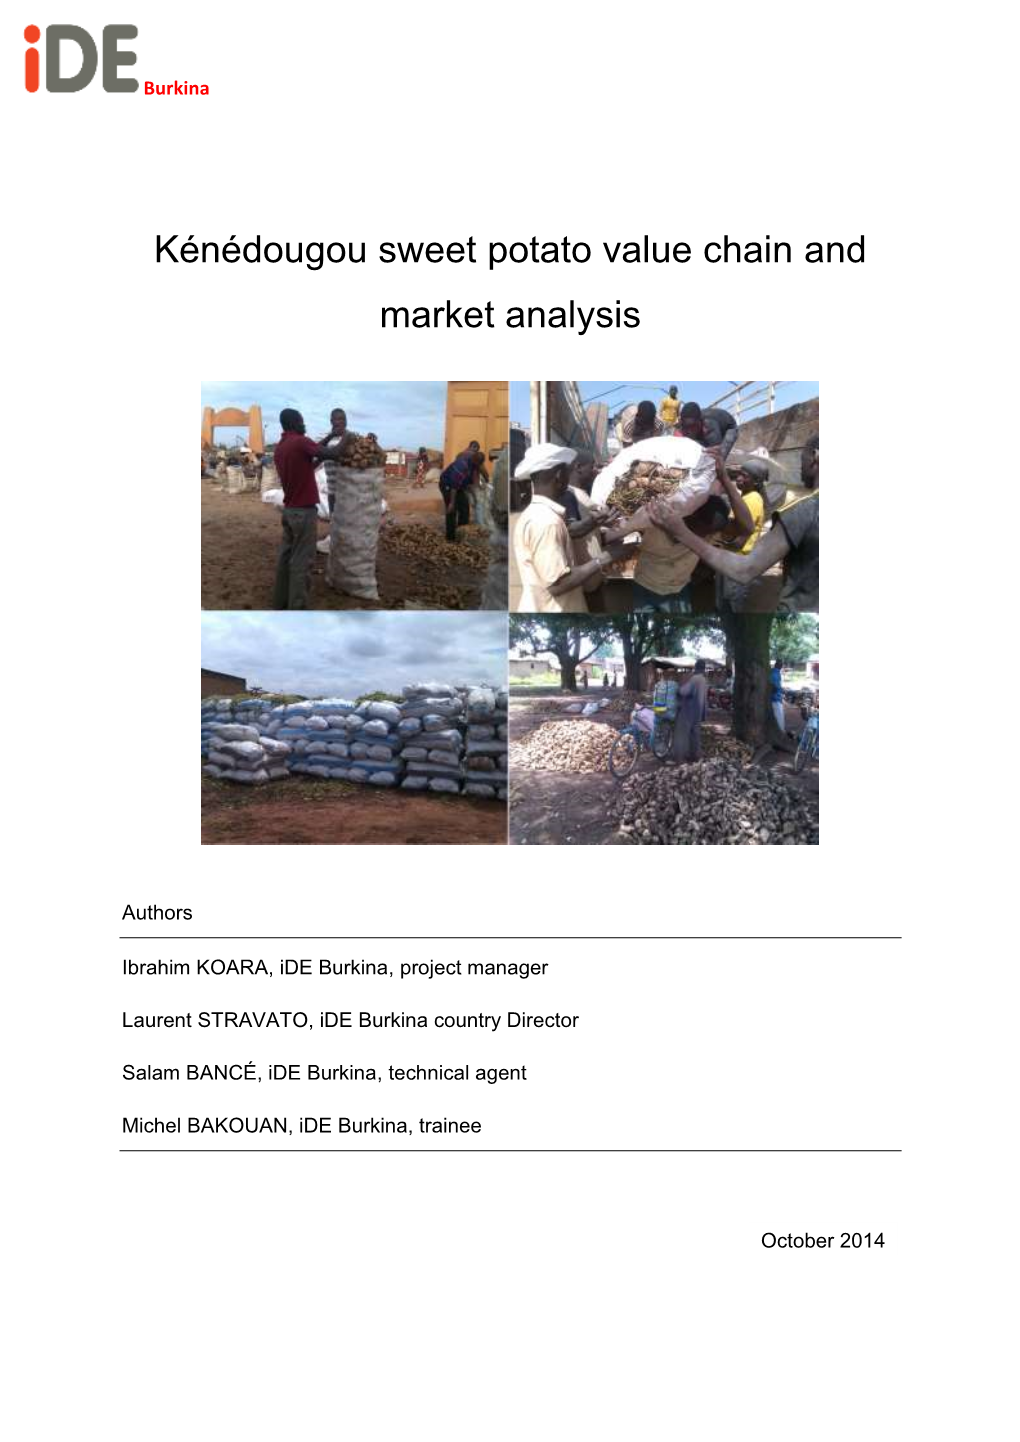 Kénédougou Sweet Potato Value Chain and Market Analysis